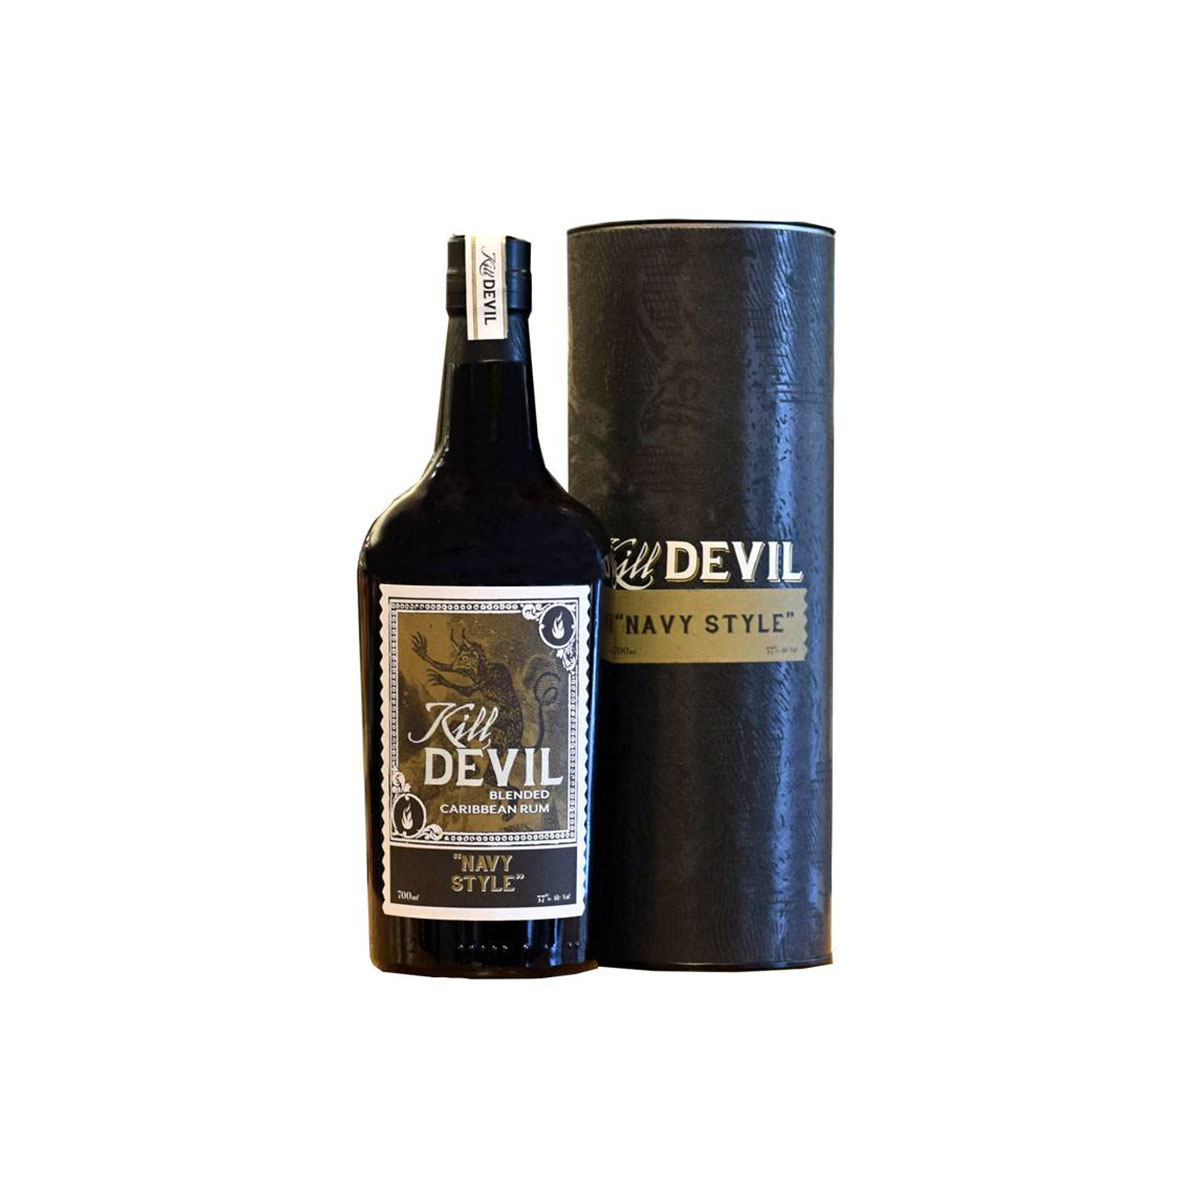 Kill Devil Blended Caribbean Navy Style Rum